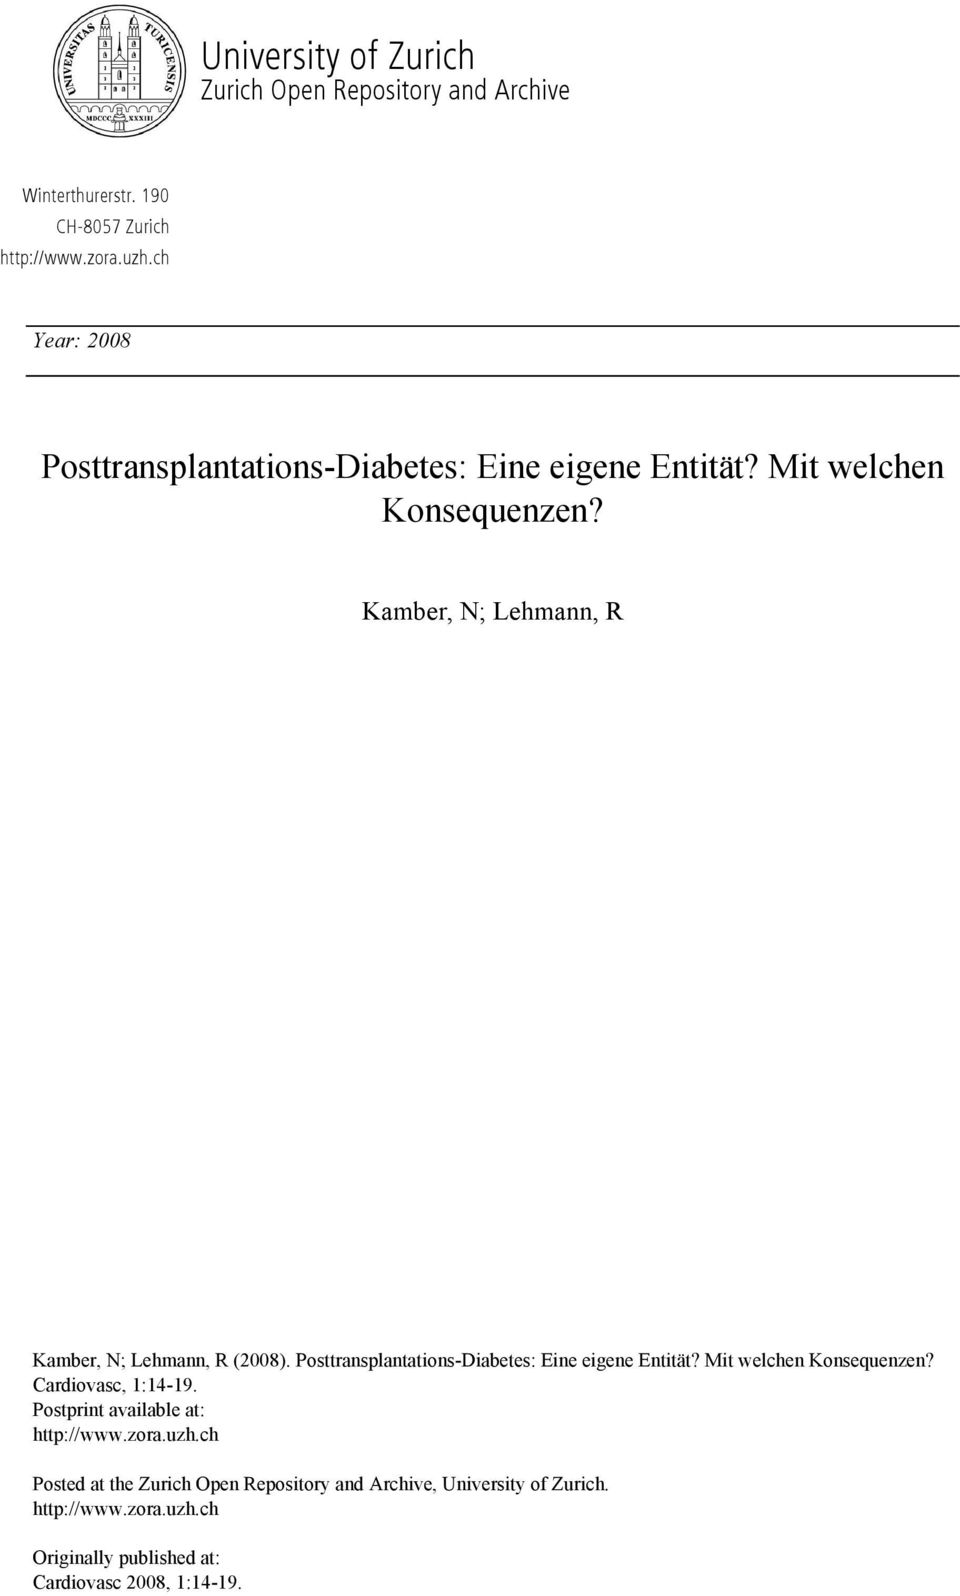 Kamber, N; Lehmann, R Kamber, N; Lehmann, R (2008). Posttransplantations-Diabetes: Eine eigene Entität? Mit welchen Konsequenzen?